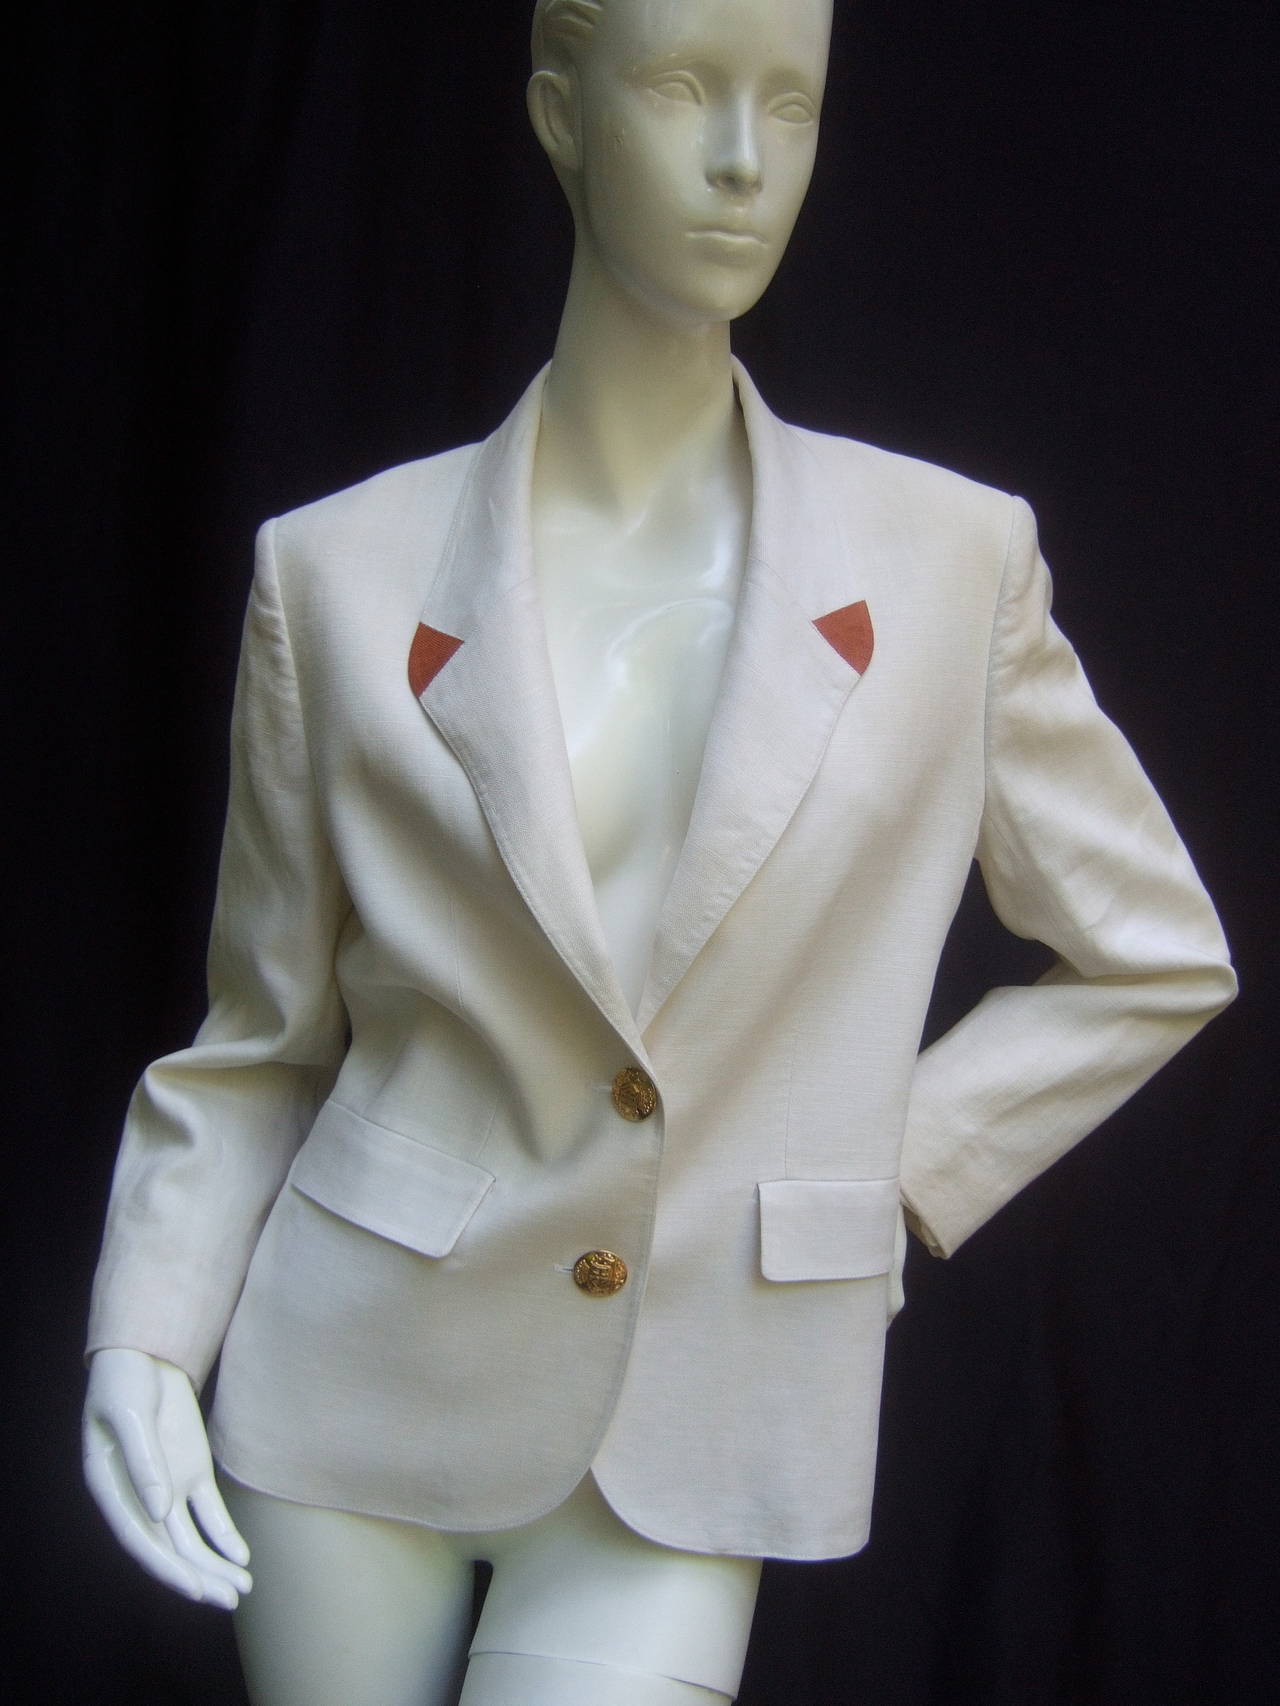 Gray Hermes Paris Crisp White Linen Jacket Made in France c 1980s